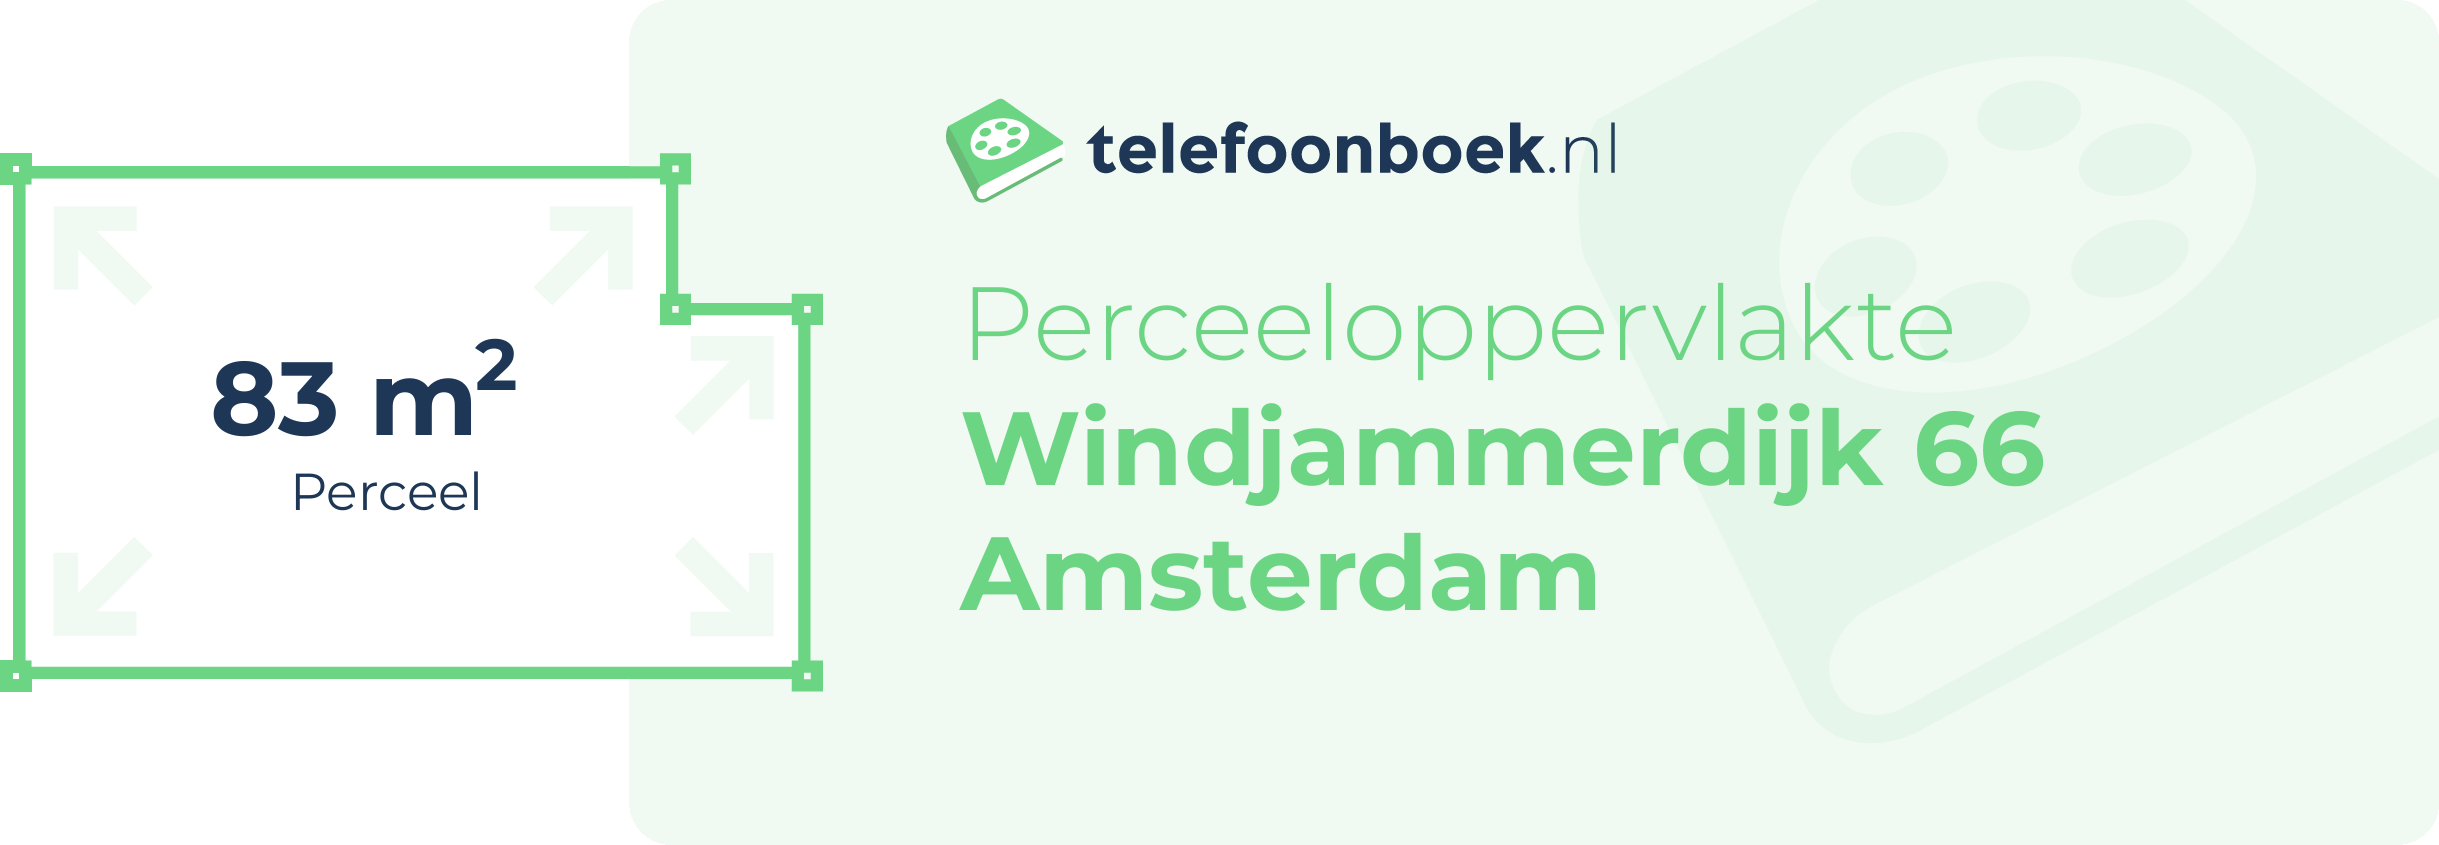 Perceeloppervlakte Windjammerdijk 66 Amsterdam